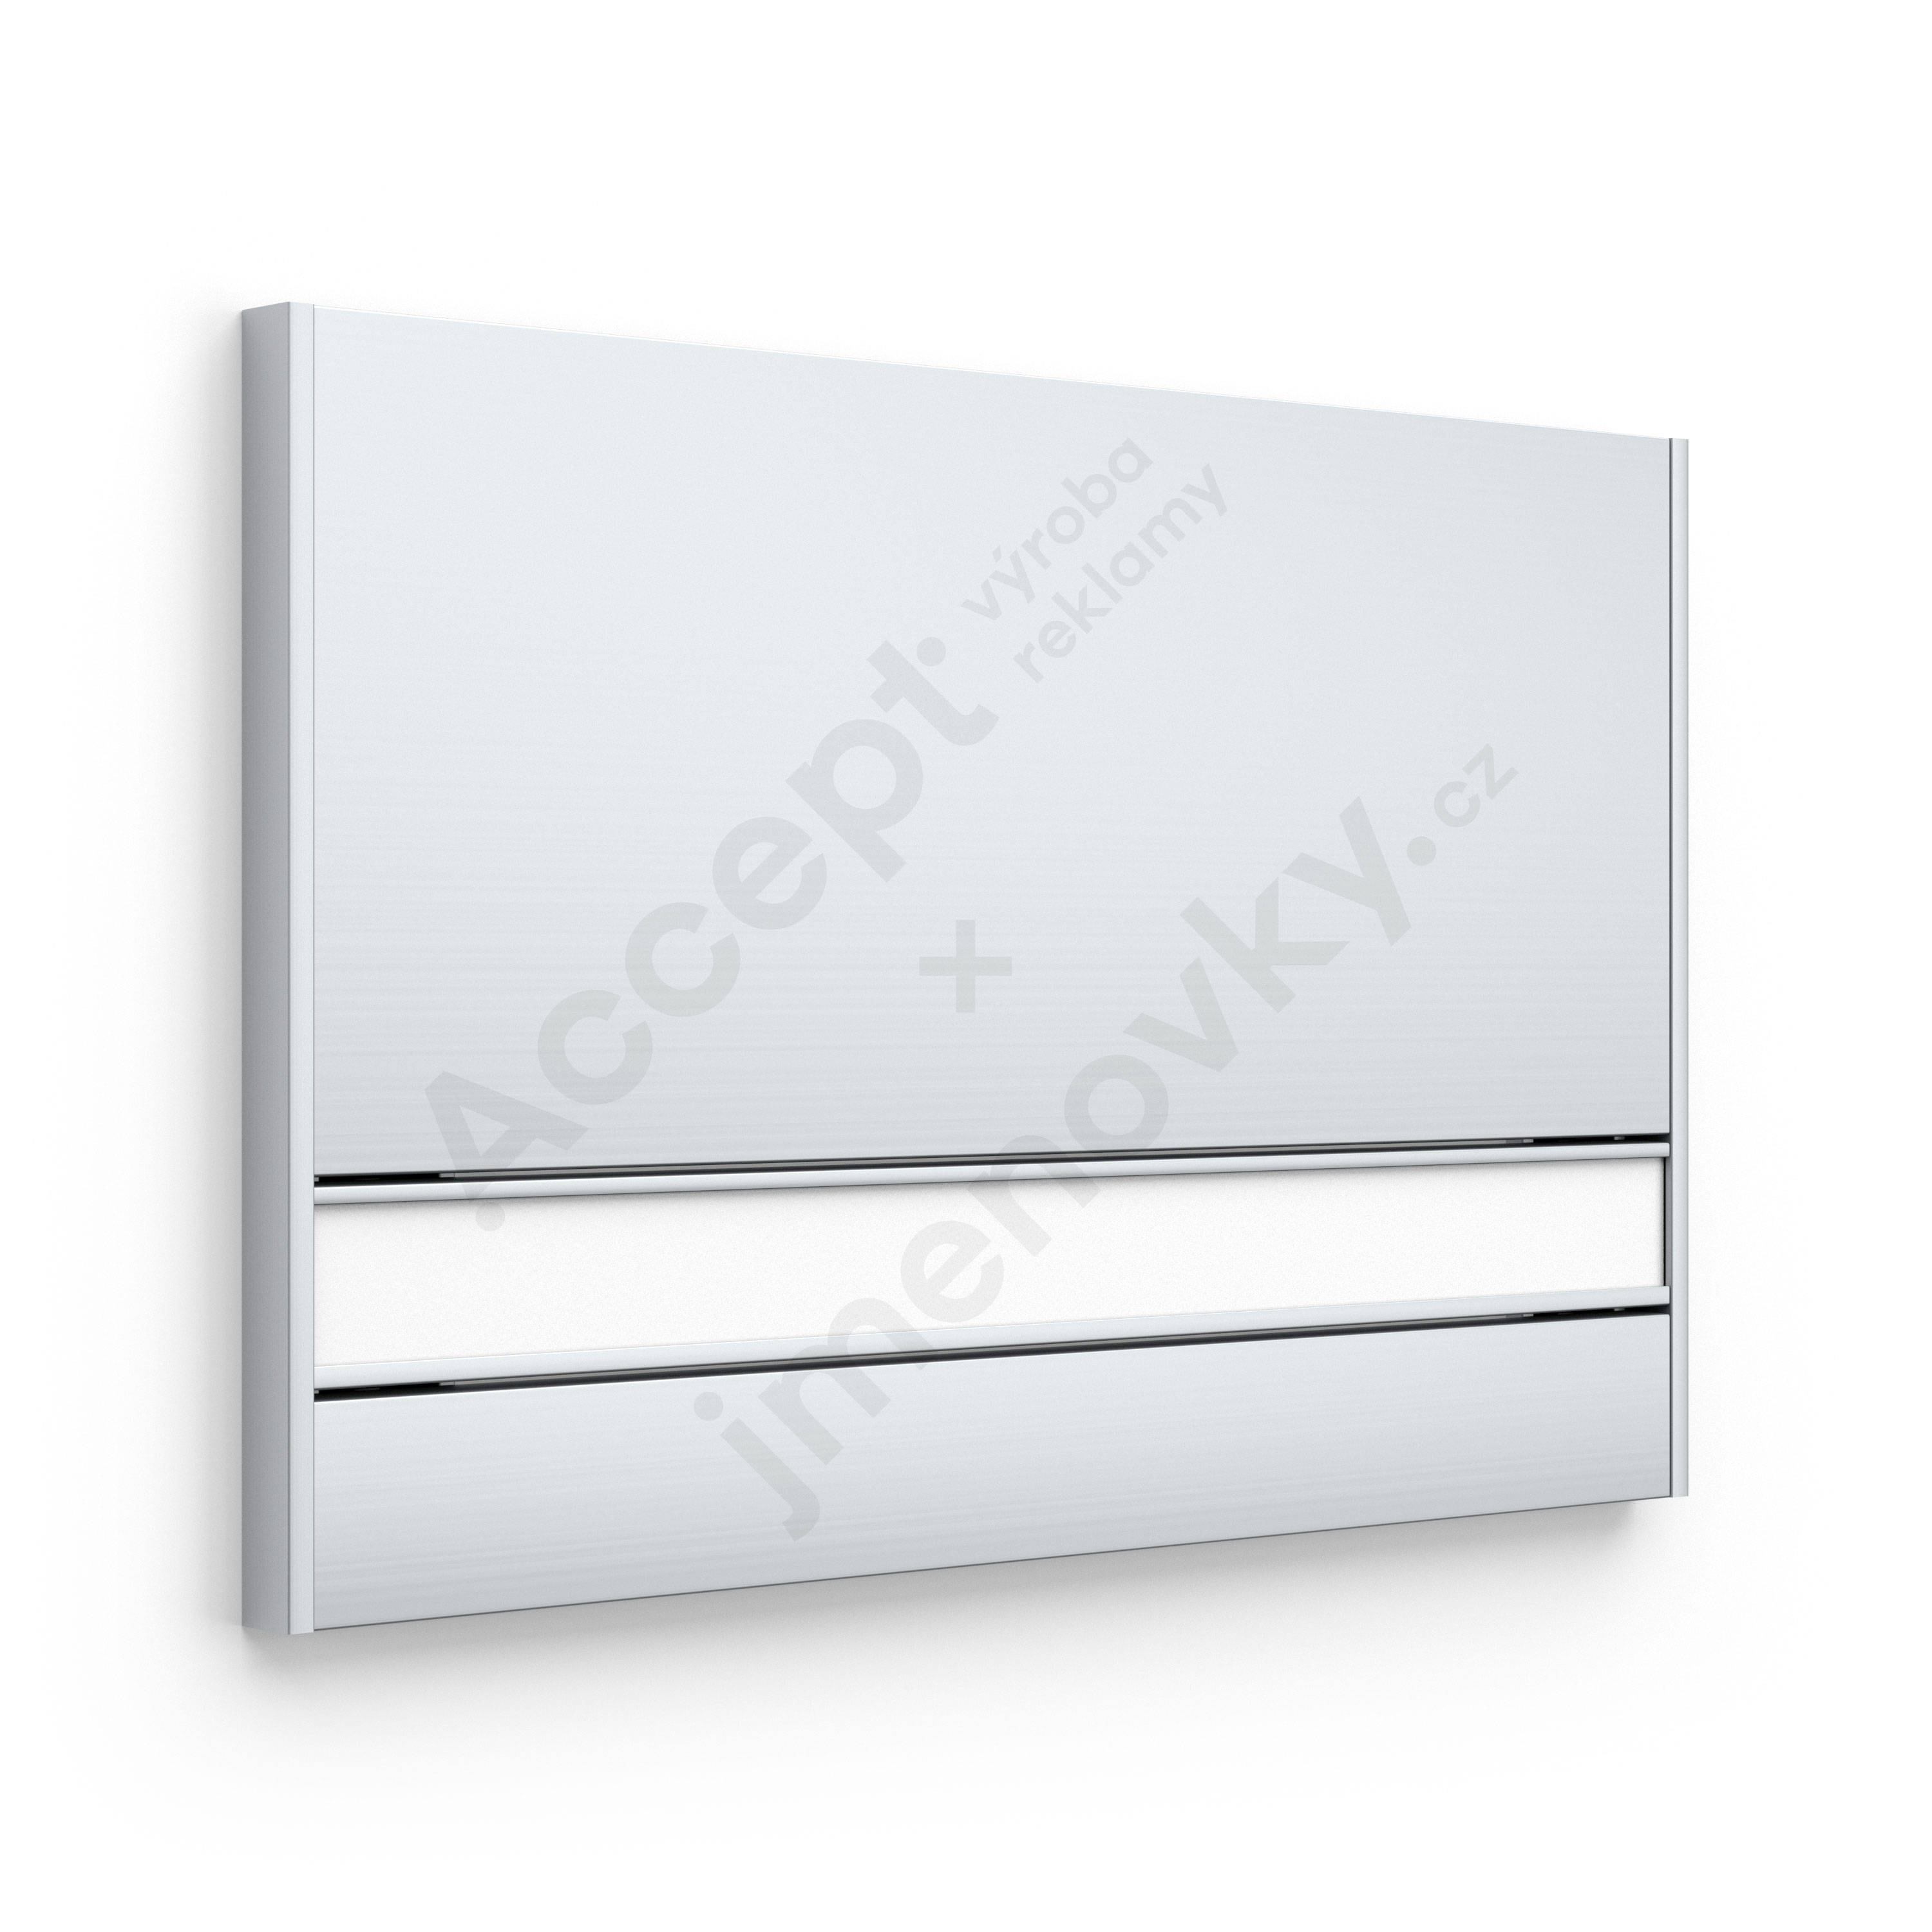 ACCEPT Dveřní tabulka SlimSlatz (zásuvný systém, rovné bočnice, 187 x 125 mm) - stříbrná tabulka